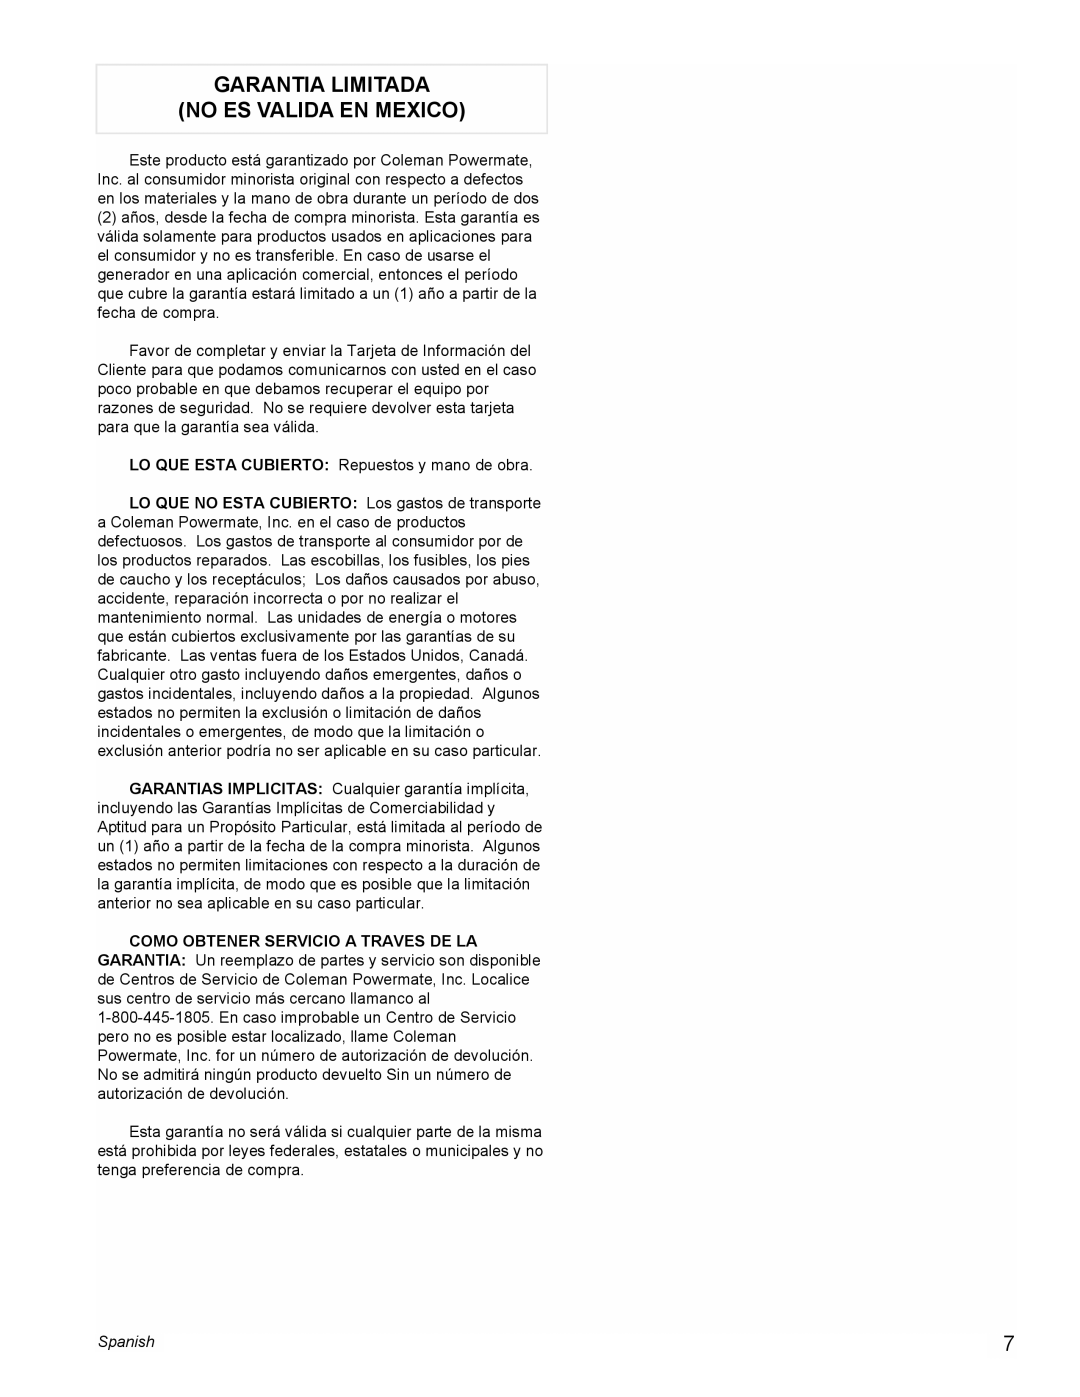 Powermate PM0545007.01 manual Garantia Limitada No Es Valida En Mexico, Spanish 